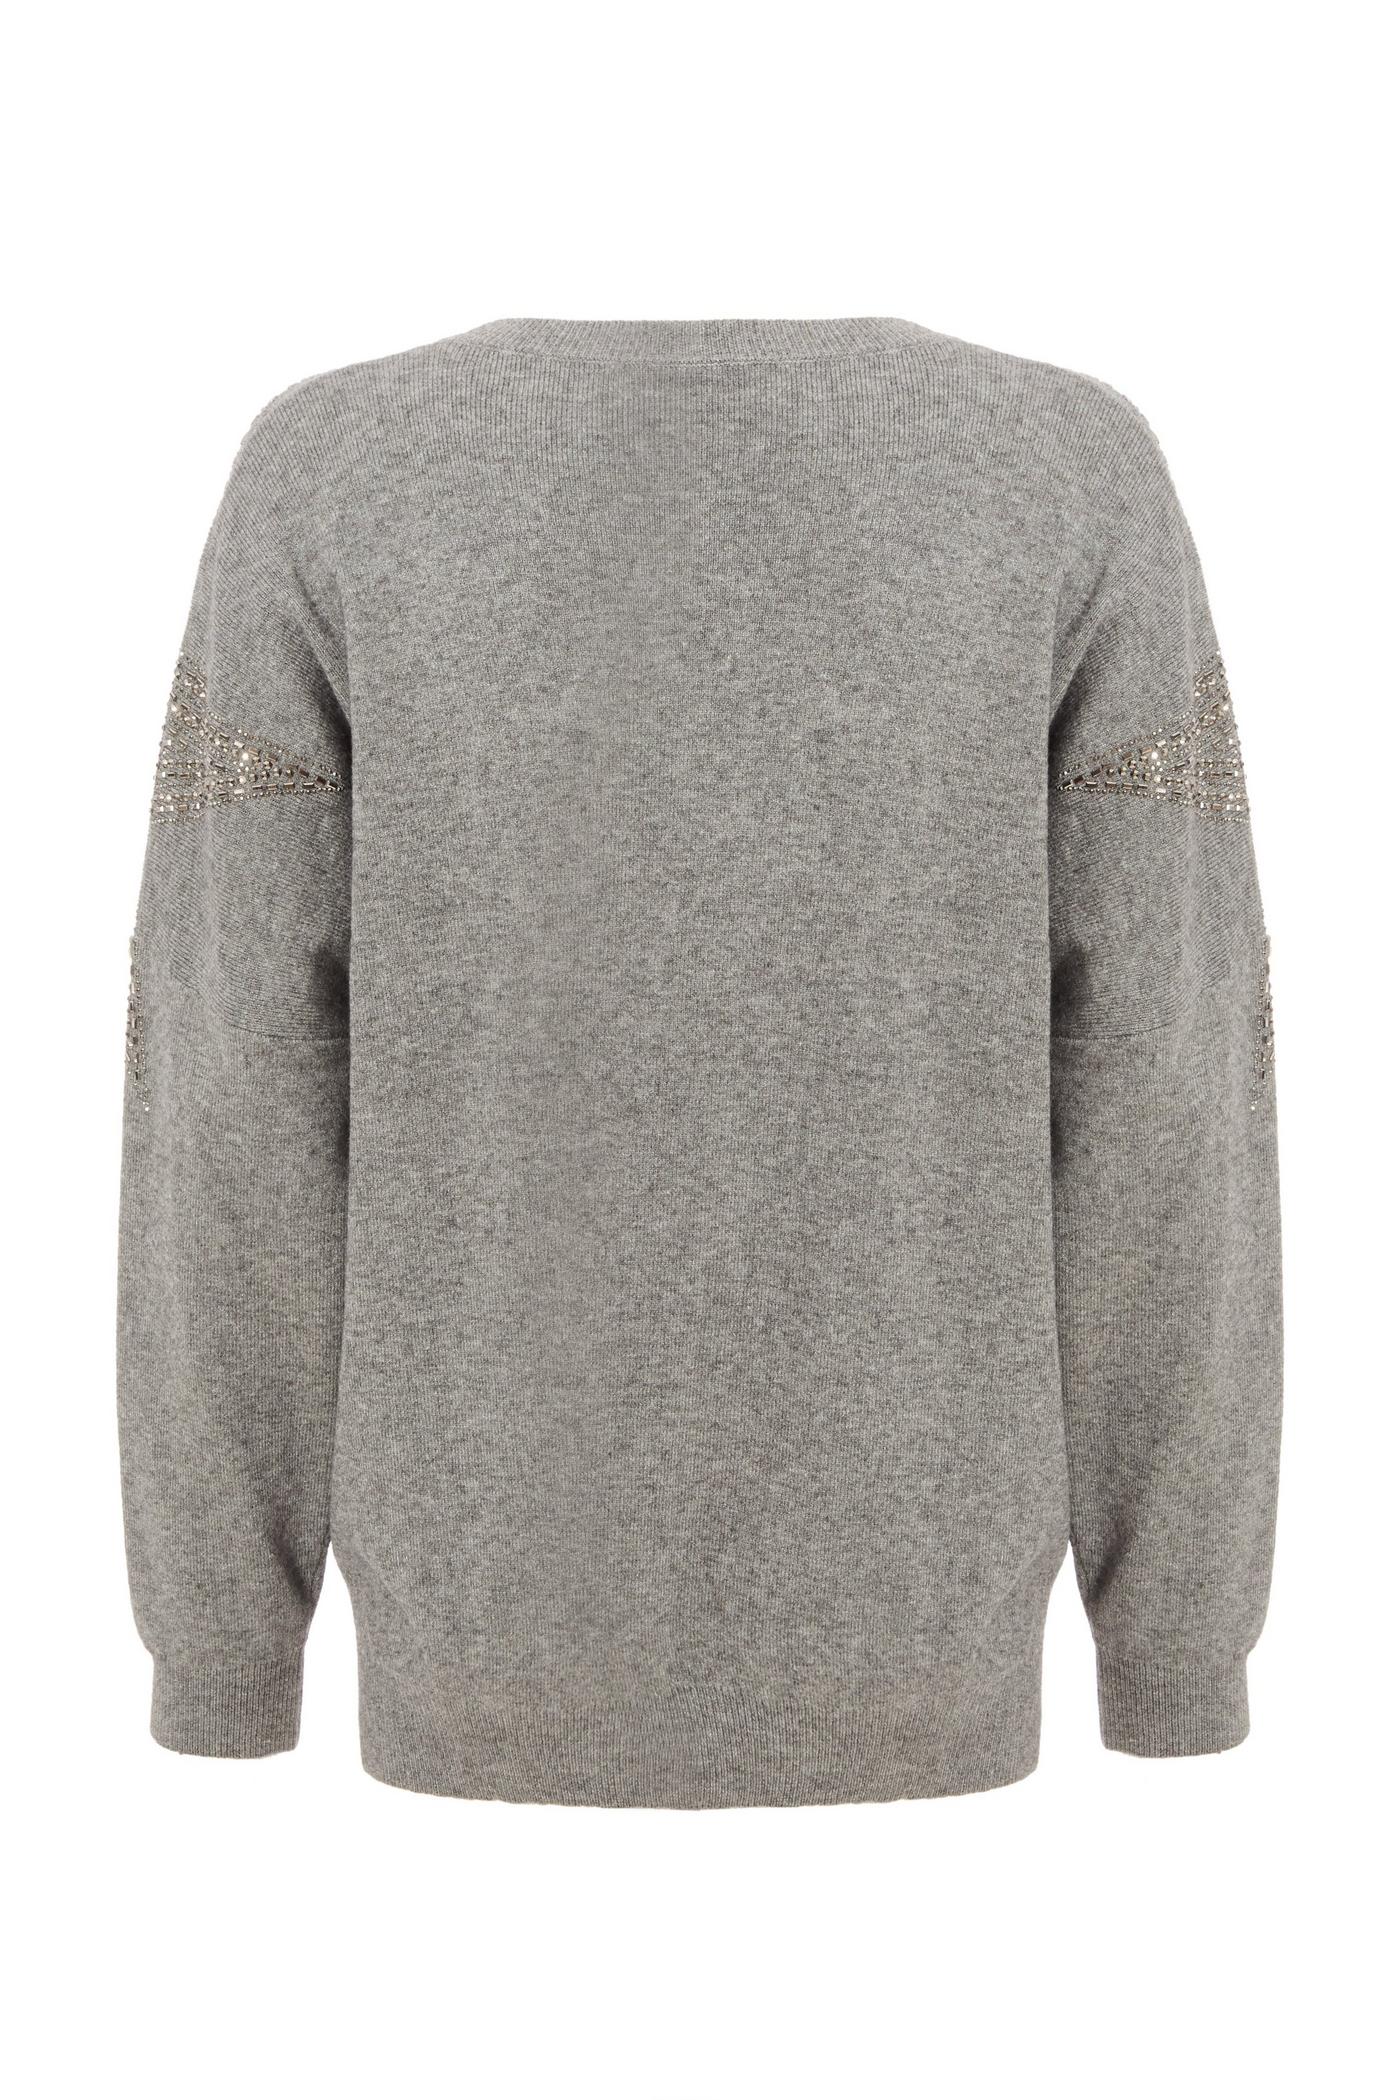 Grey Embellished Knitted Jumper